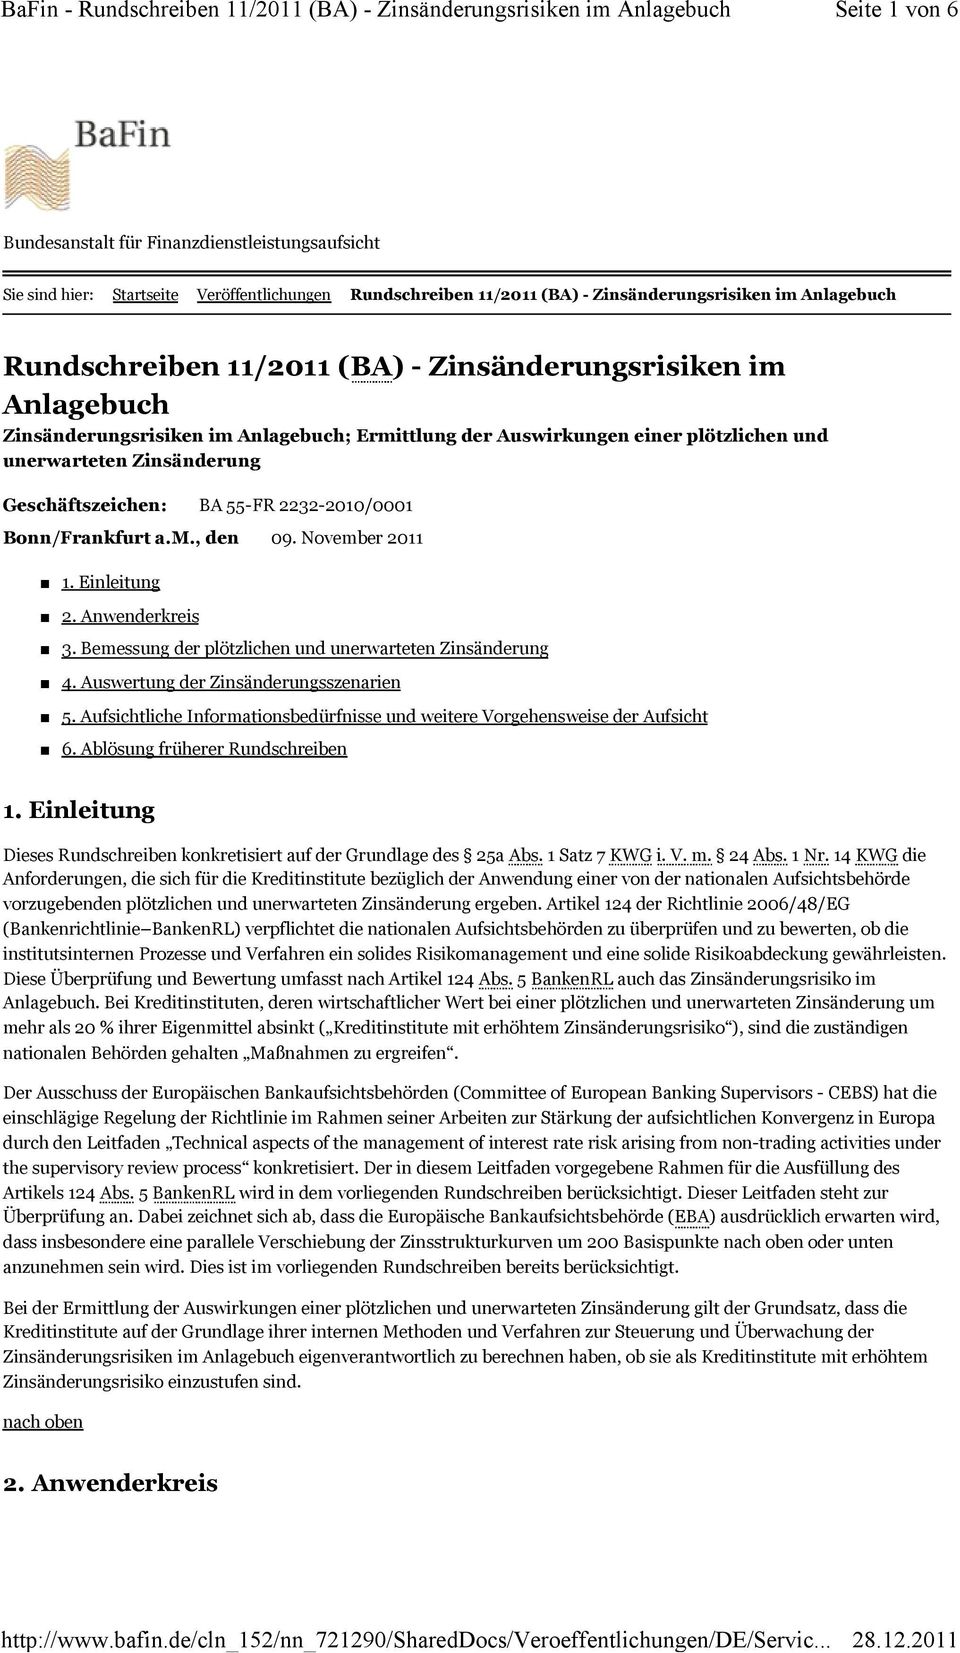 Bonn/Frankfurt a.m., den 09. November 2011 1. Einleitung 2. Anwenderkreis 3. Bemessung der plötzlichen und unerwarteten Zinsänderung 4. Auswertung der Zinsänderungsszenarien 5.